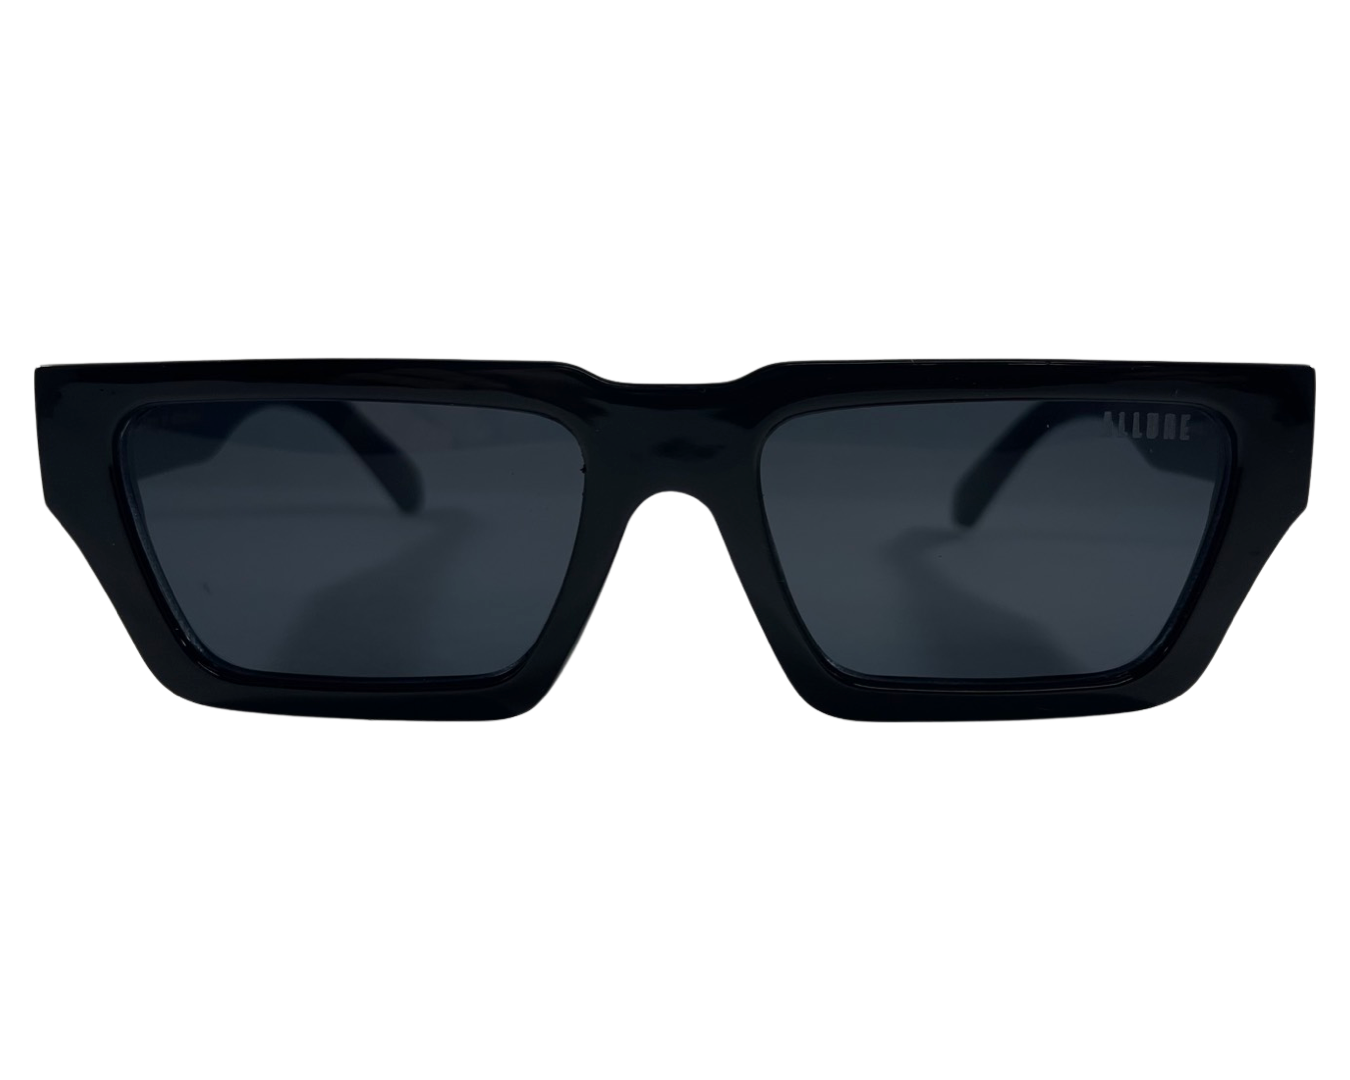 Louis Vuitton Twister Sunglasses For Menu